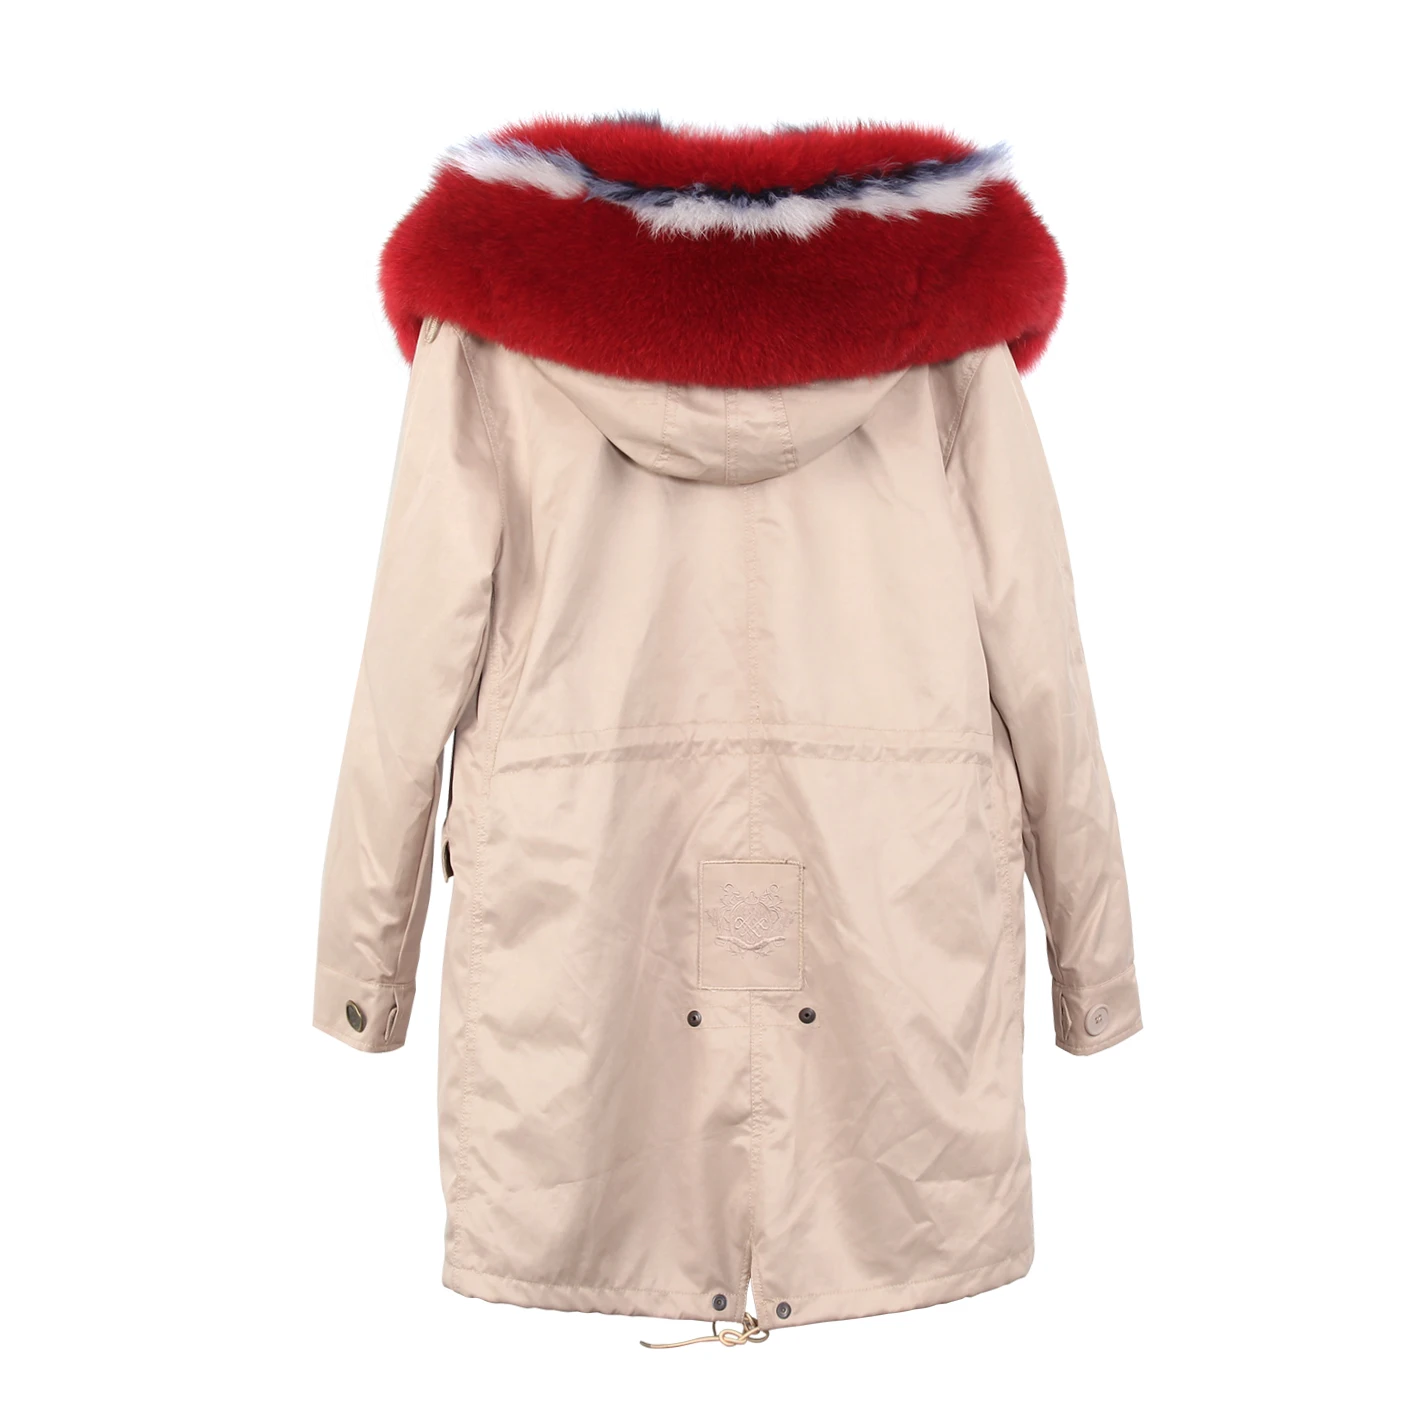 JAZZEVAR Новая куртка зима высокая мода для женщин роскошная большая лиса мех армейская парка длинная съемная подкладка с капюшоном водонепроницаемое пальто